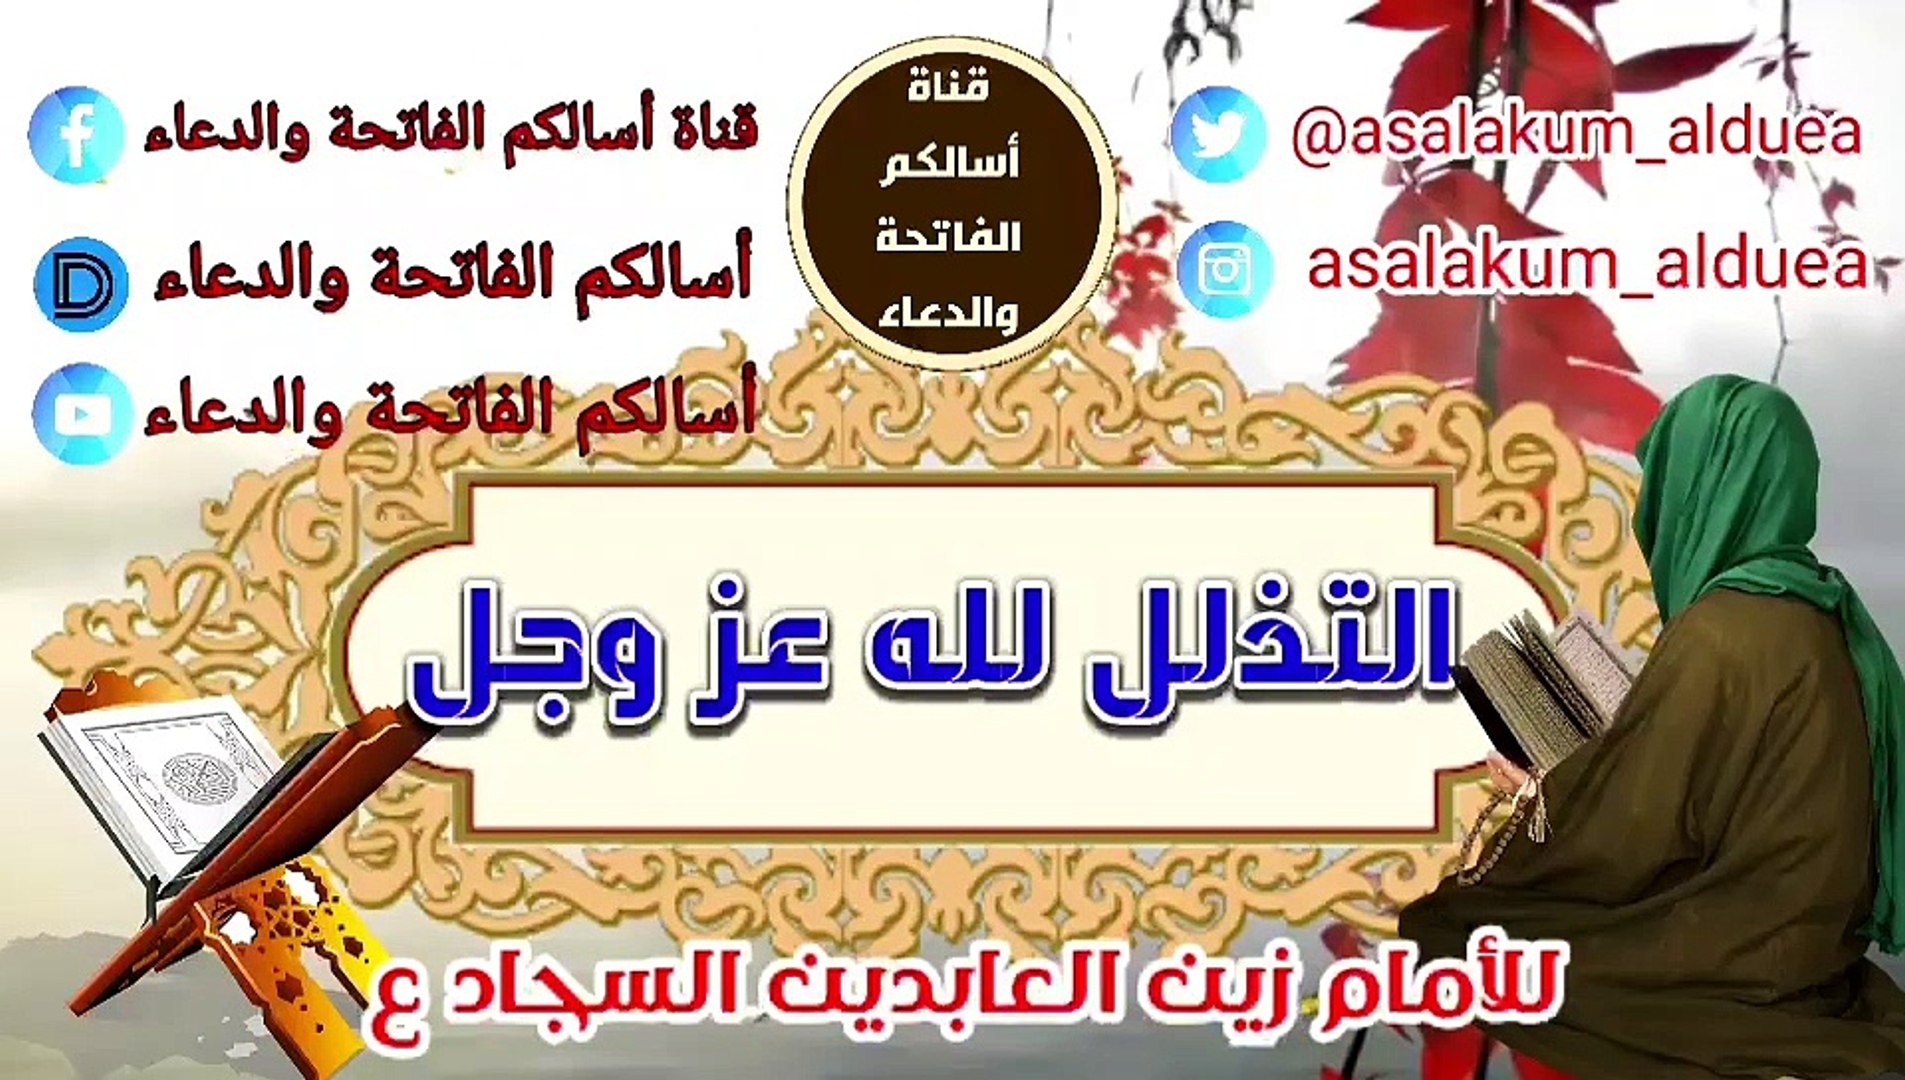 دعاء الإمام السجاد عليه السلام في التذلل لله عز وجل - فيديو Dailymotion